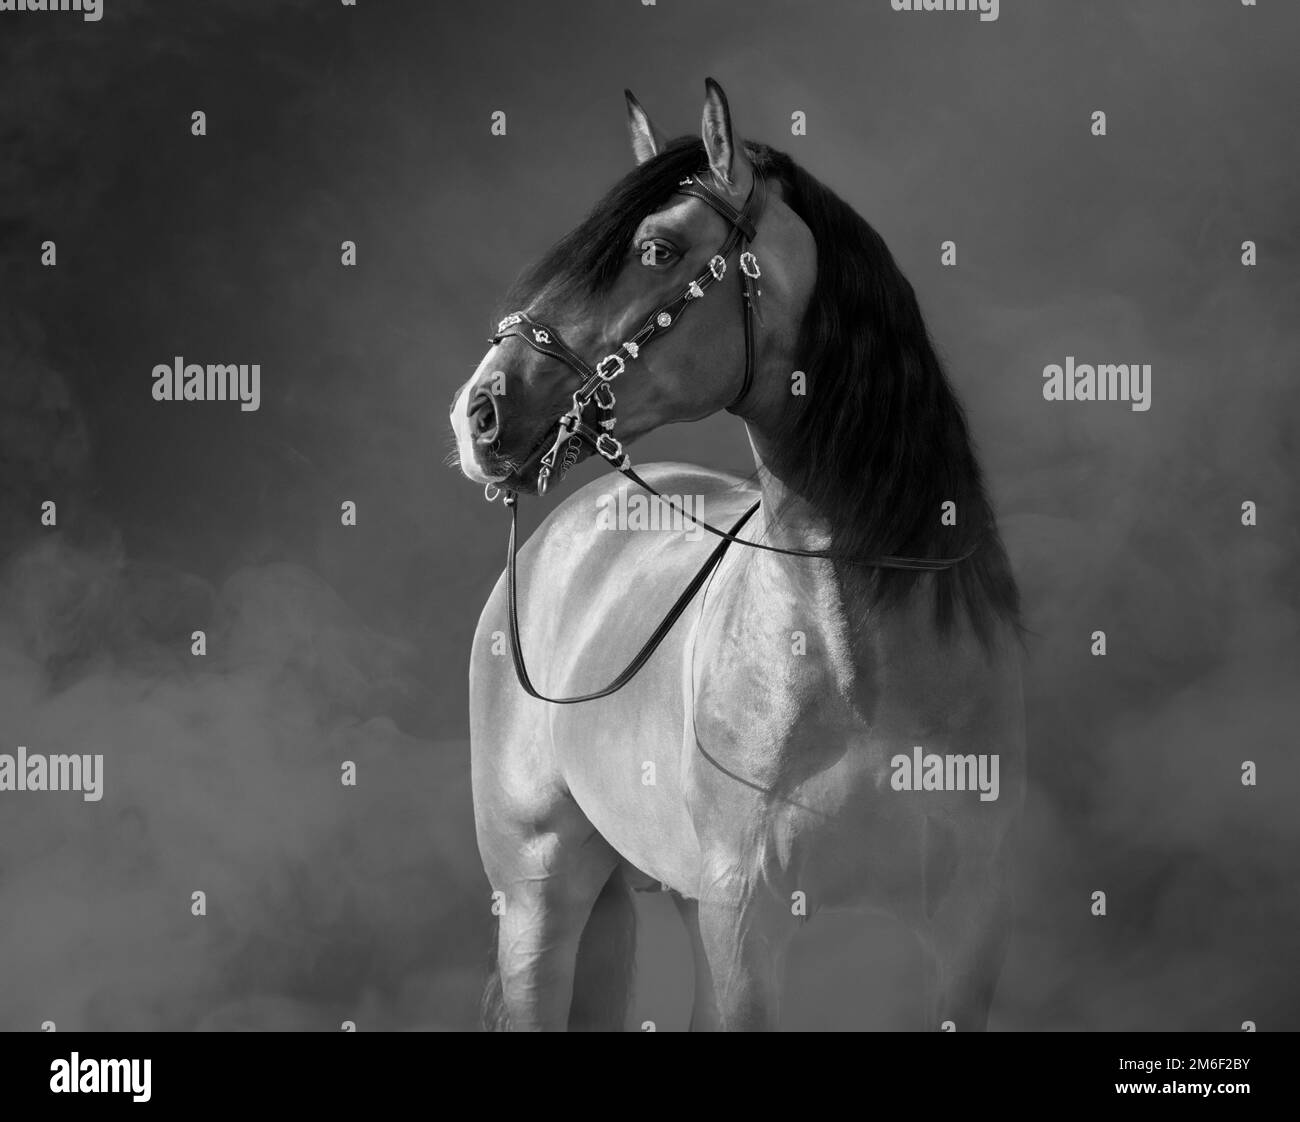 Cheval espagnol dans le bridle baroque dans la fumée légère. Photo noir et blanc. Banque D'Images